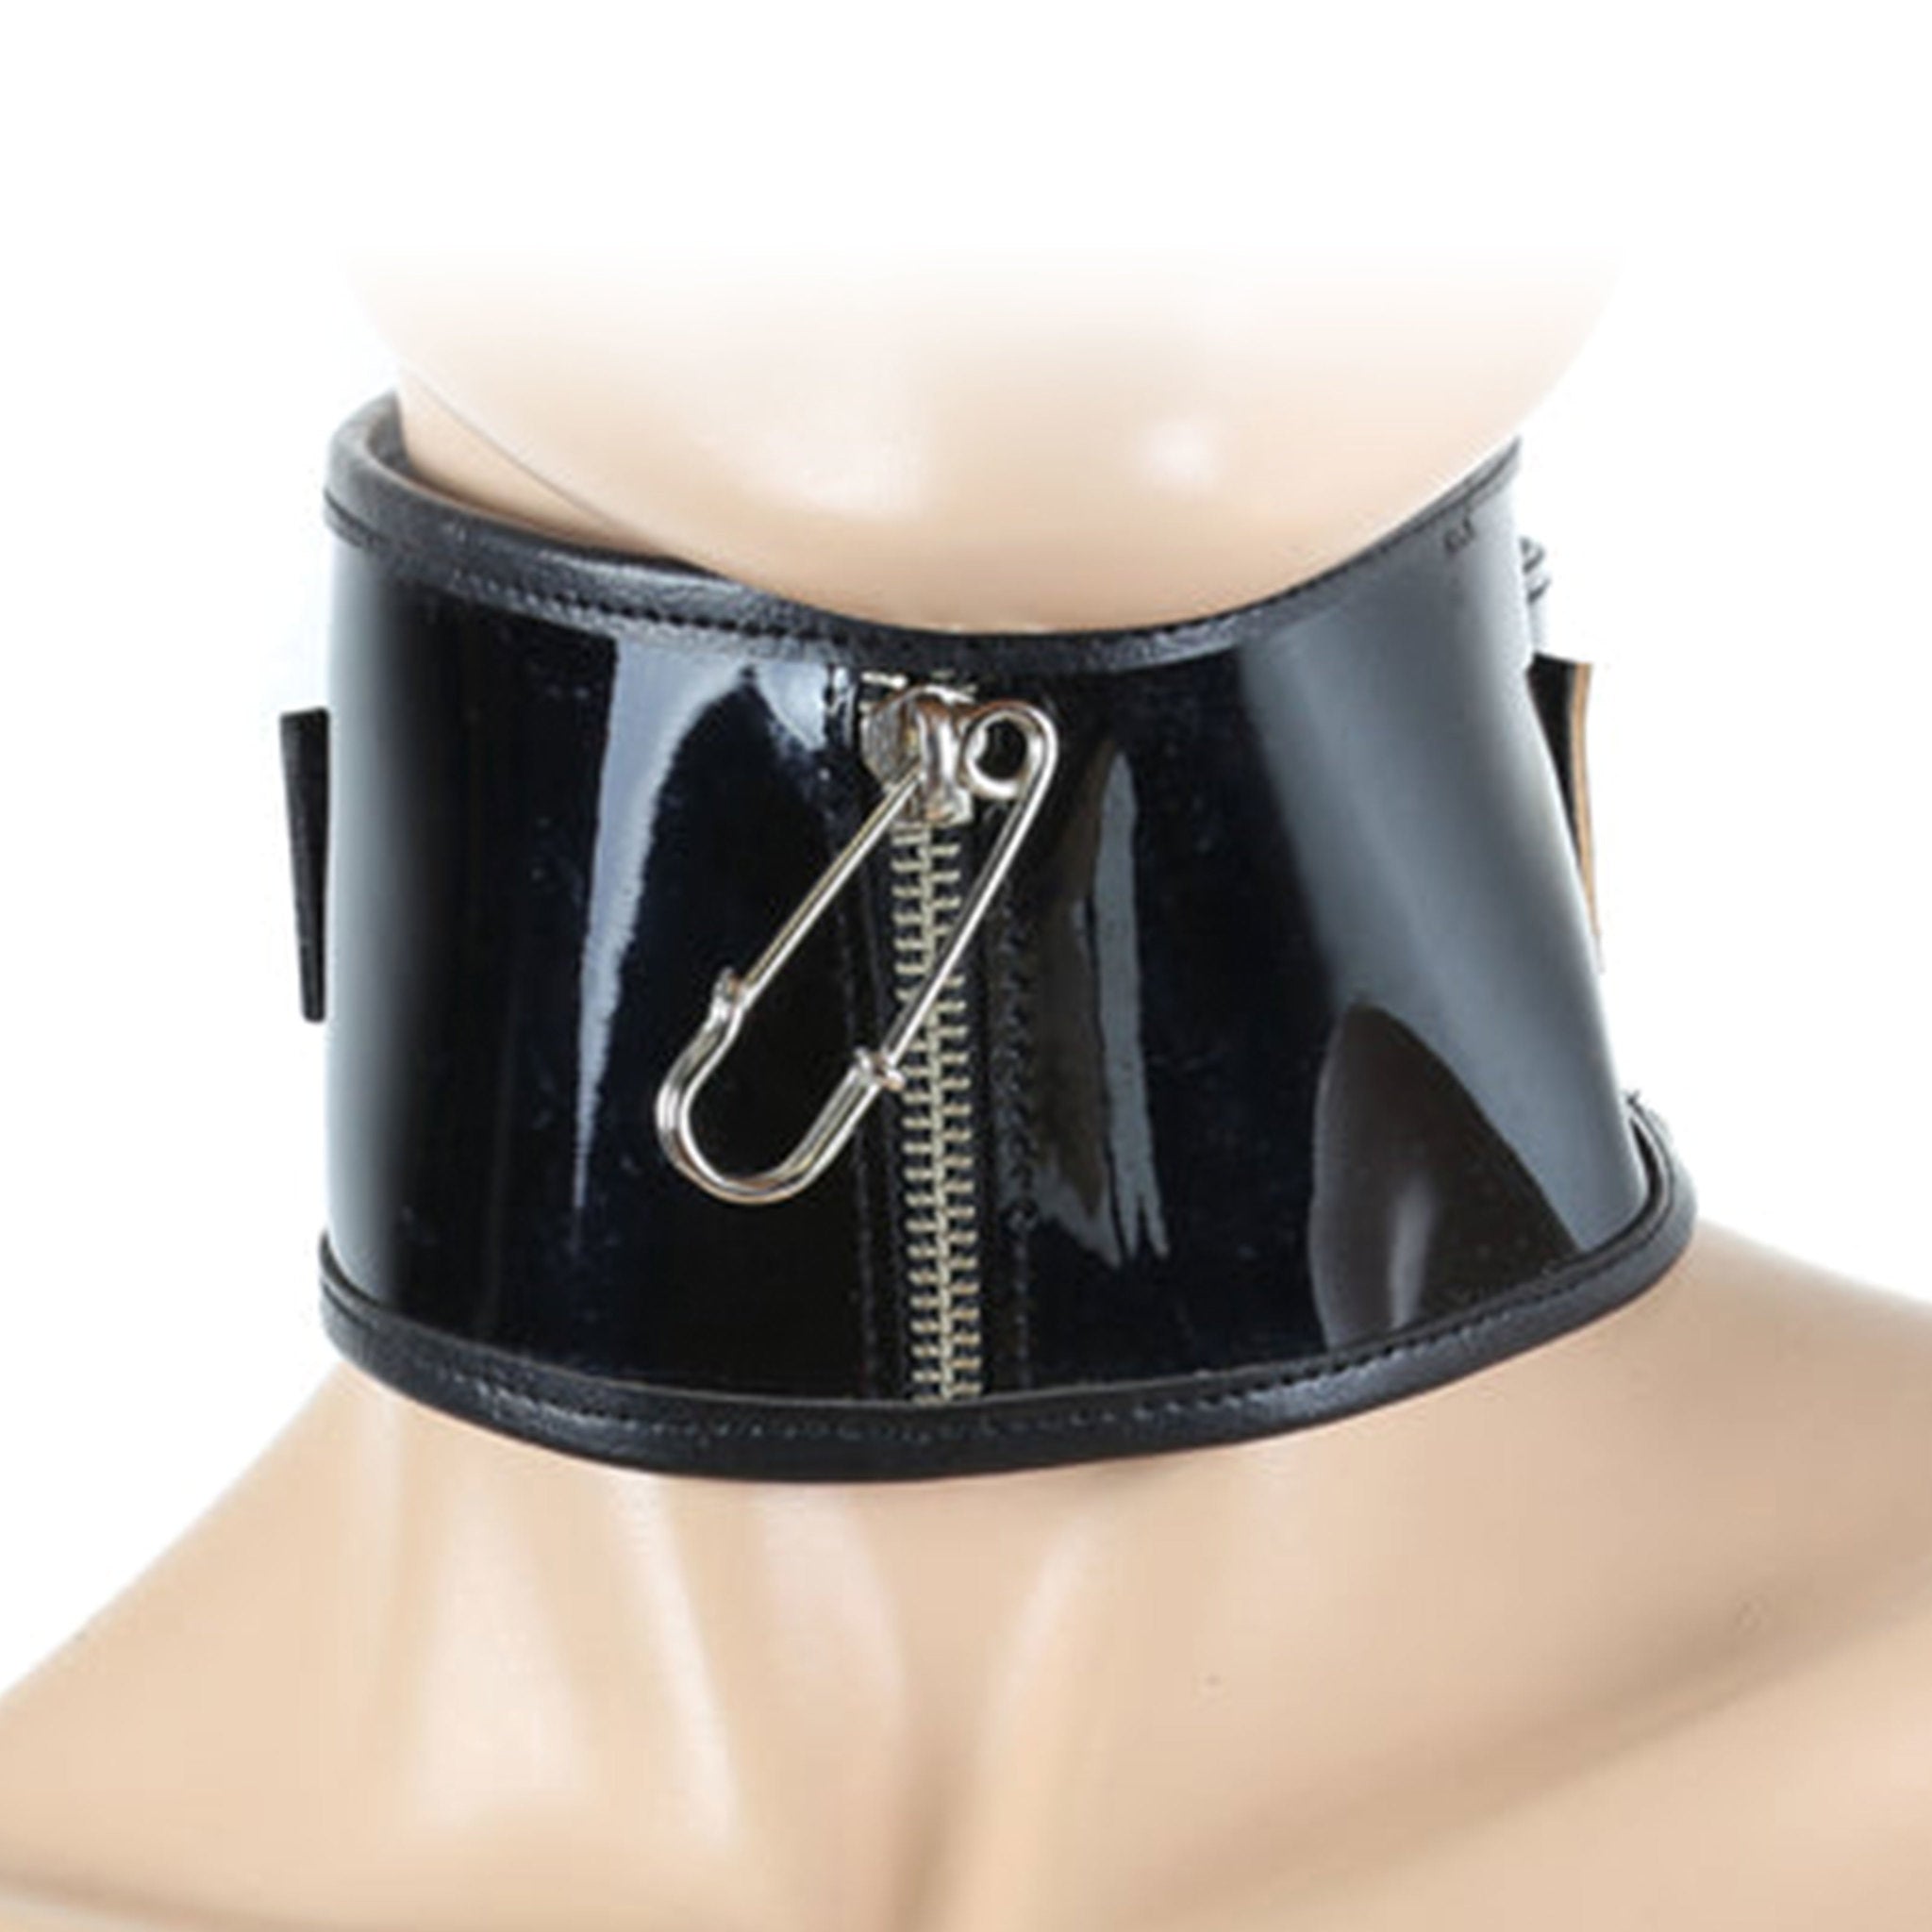 Safety Pin Zipper Money Keeper Collar